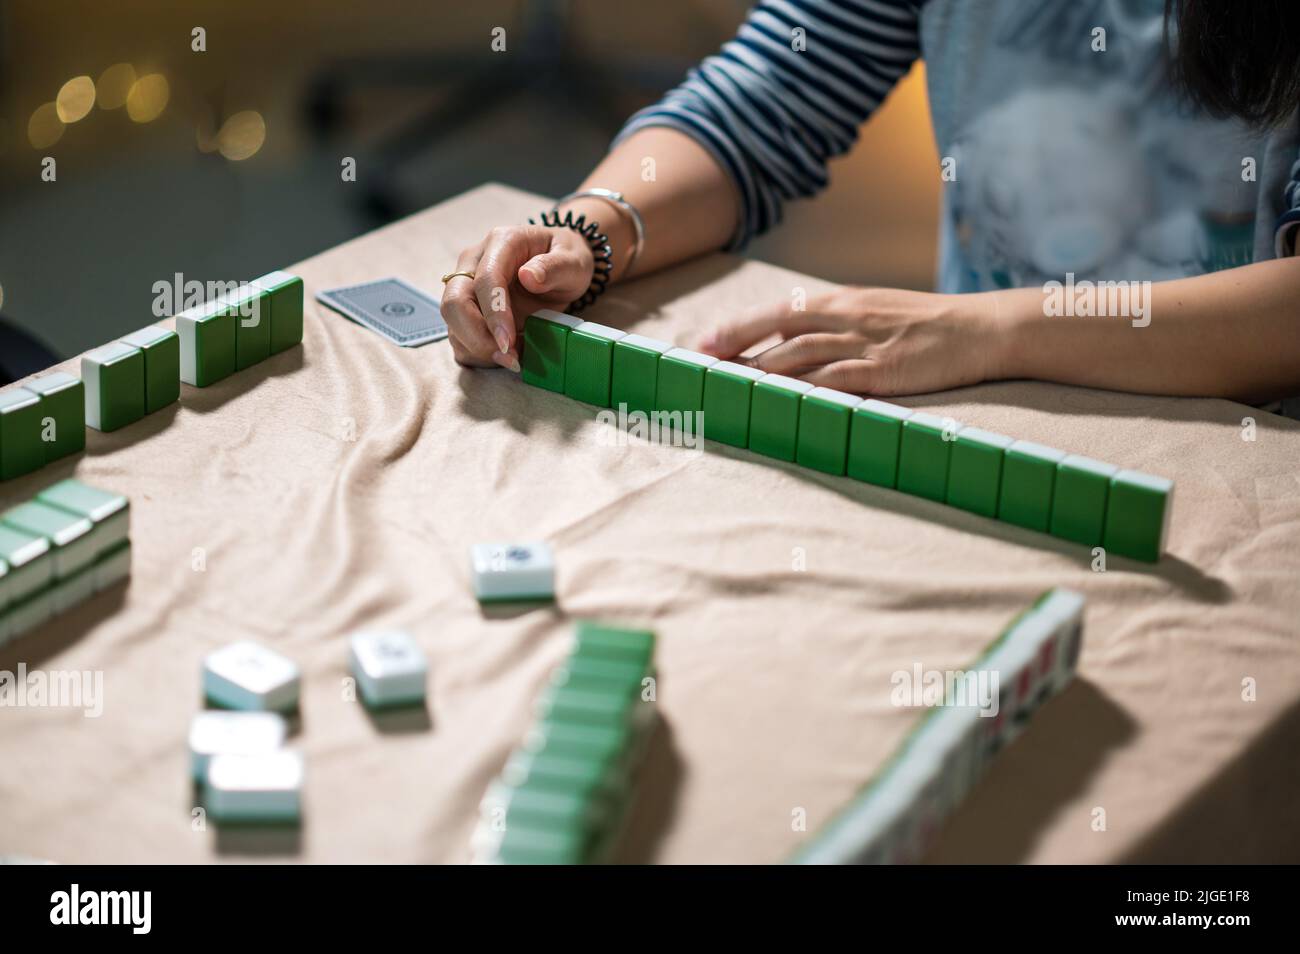 Amigas jugando mahjong tradicional chino juego de mesa en casa. Traducción: El texto de las fichas muestra los caracteres chinos para los números del 1 al 9 y si Foto de stock